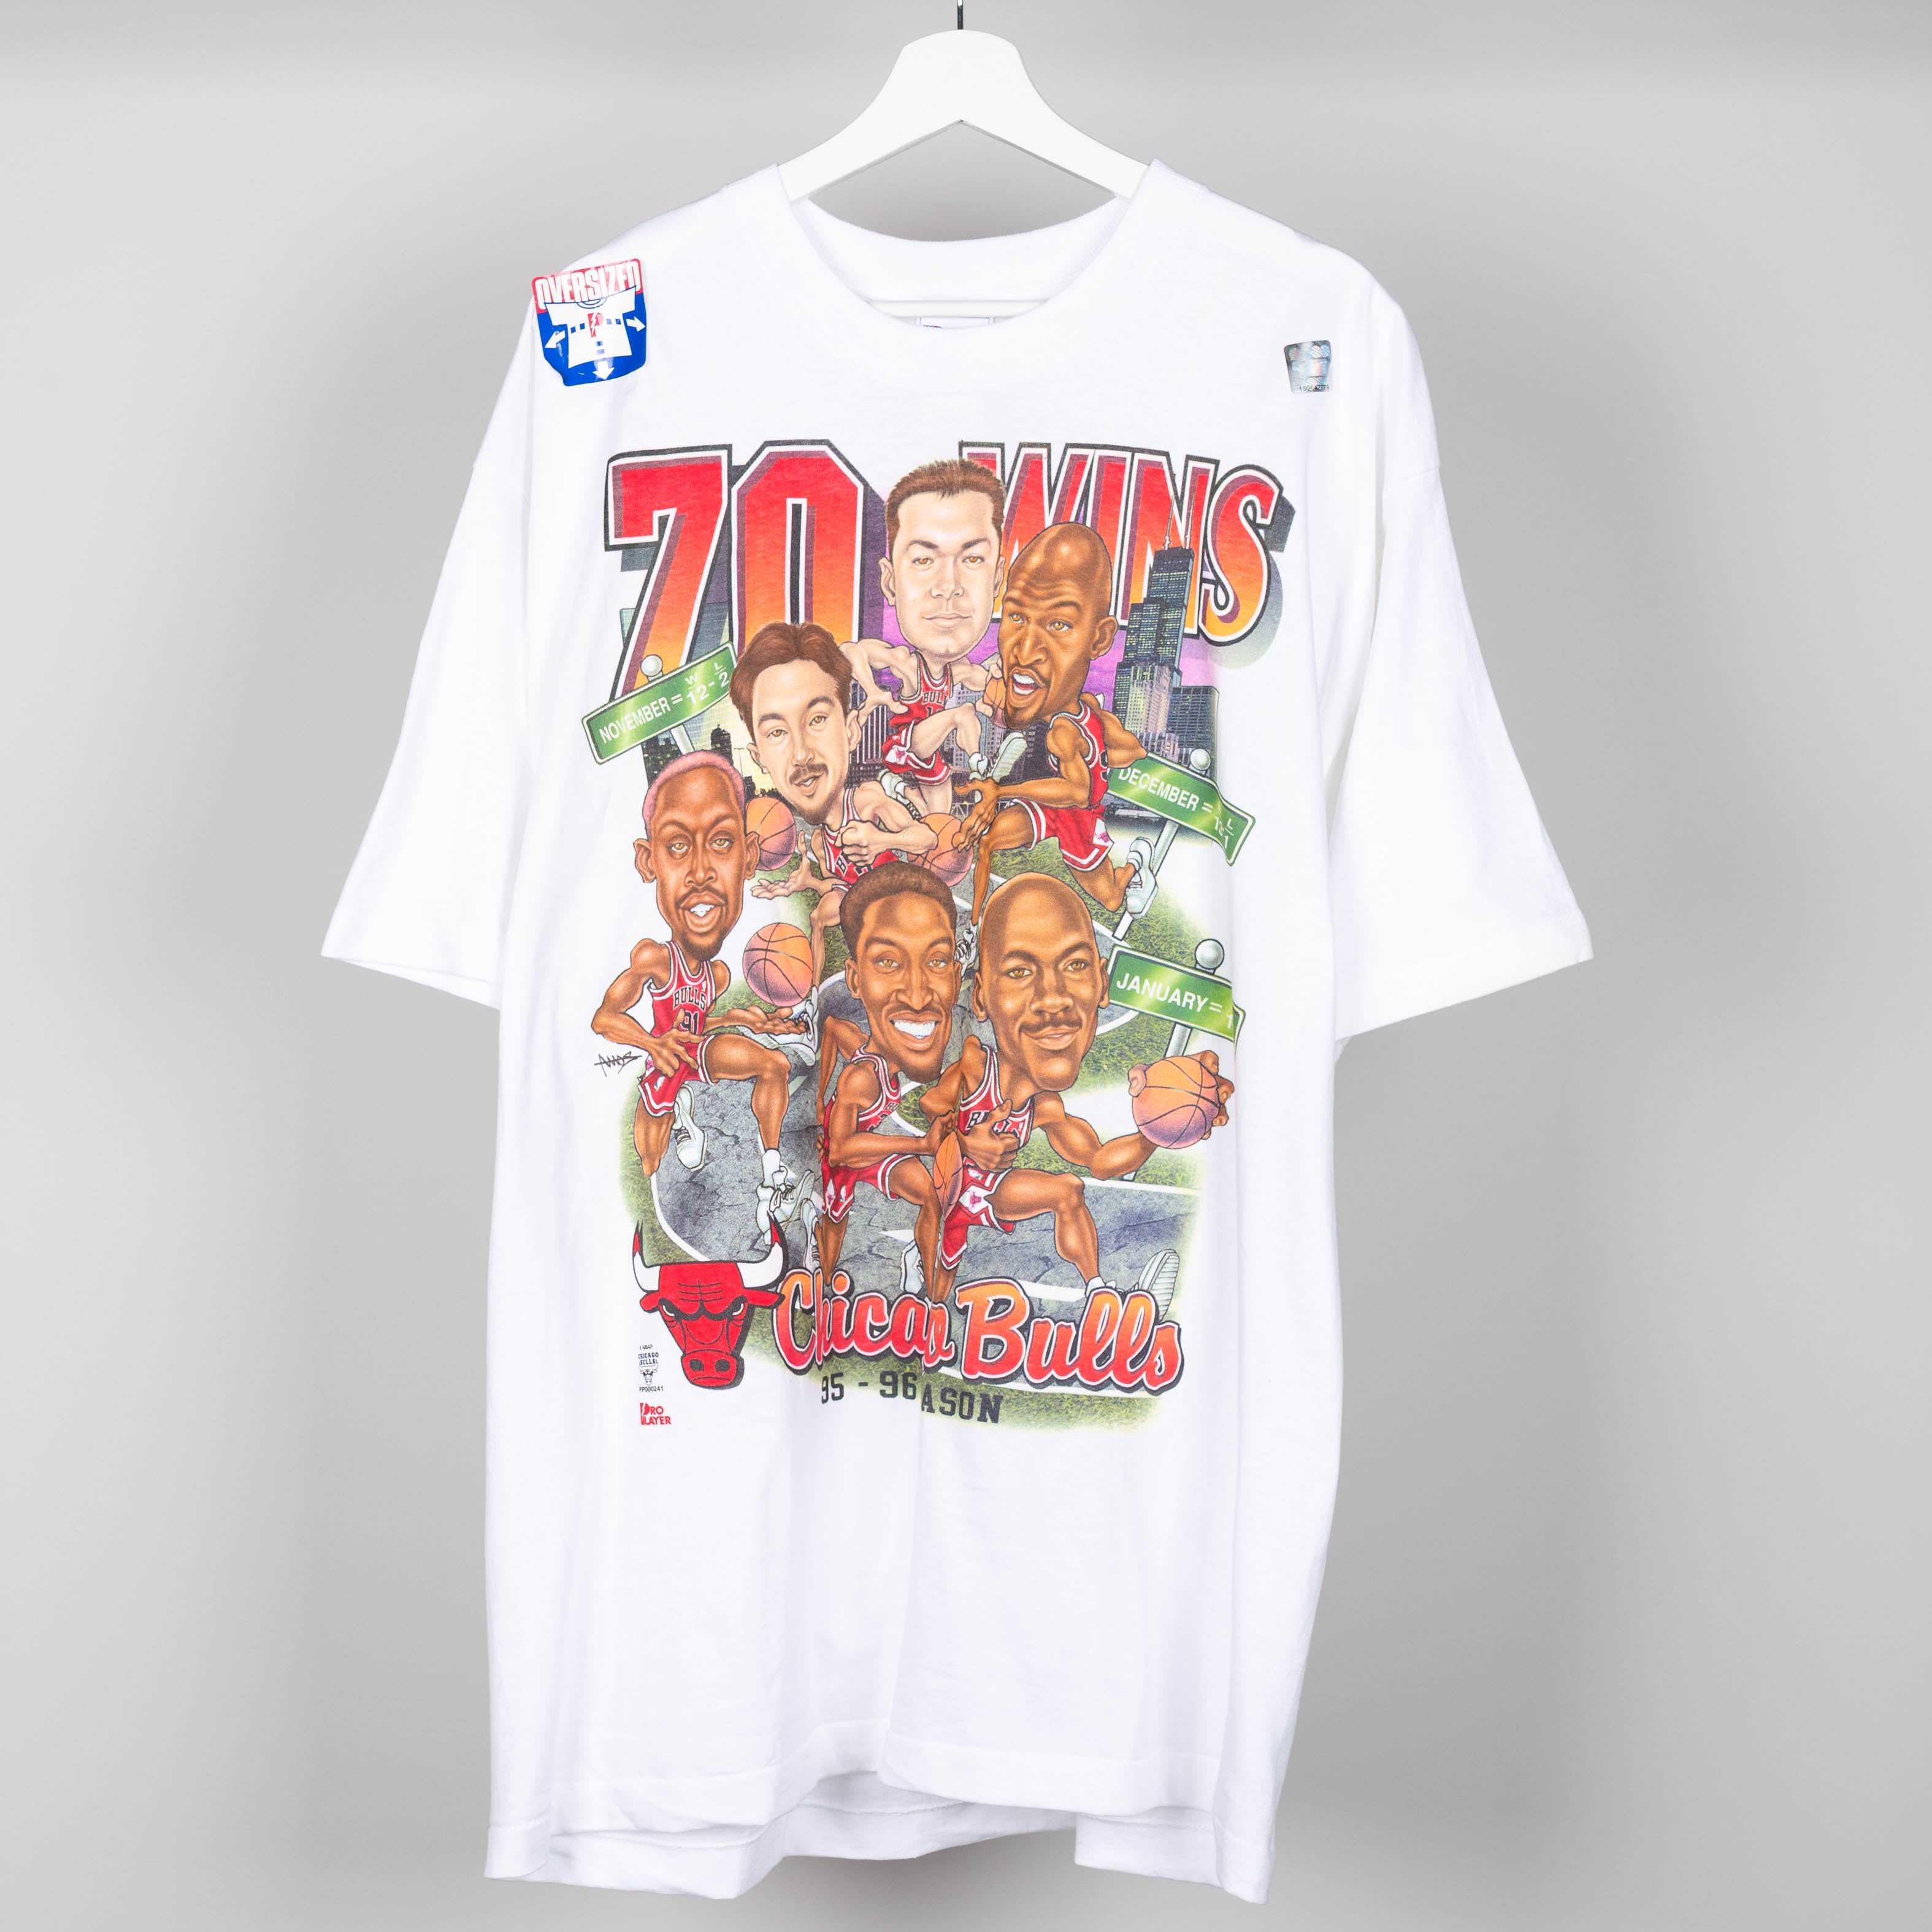 1996 Chicago Bulls 70 Wins T-Shirt Size XL